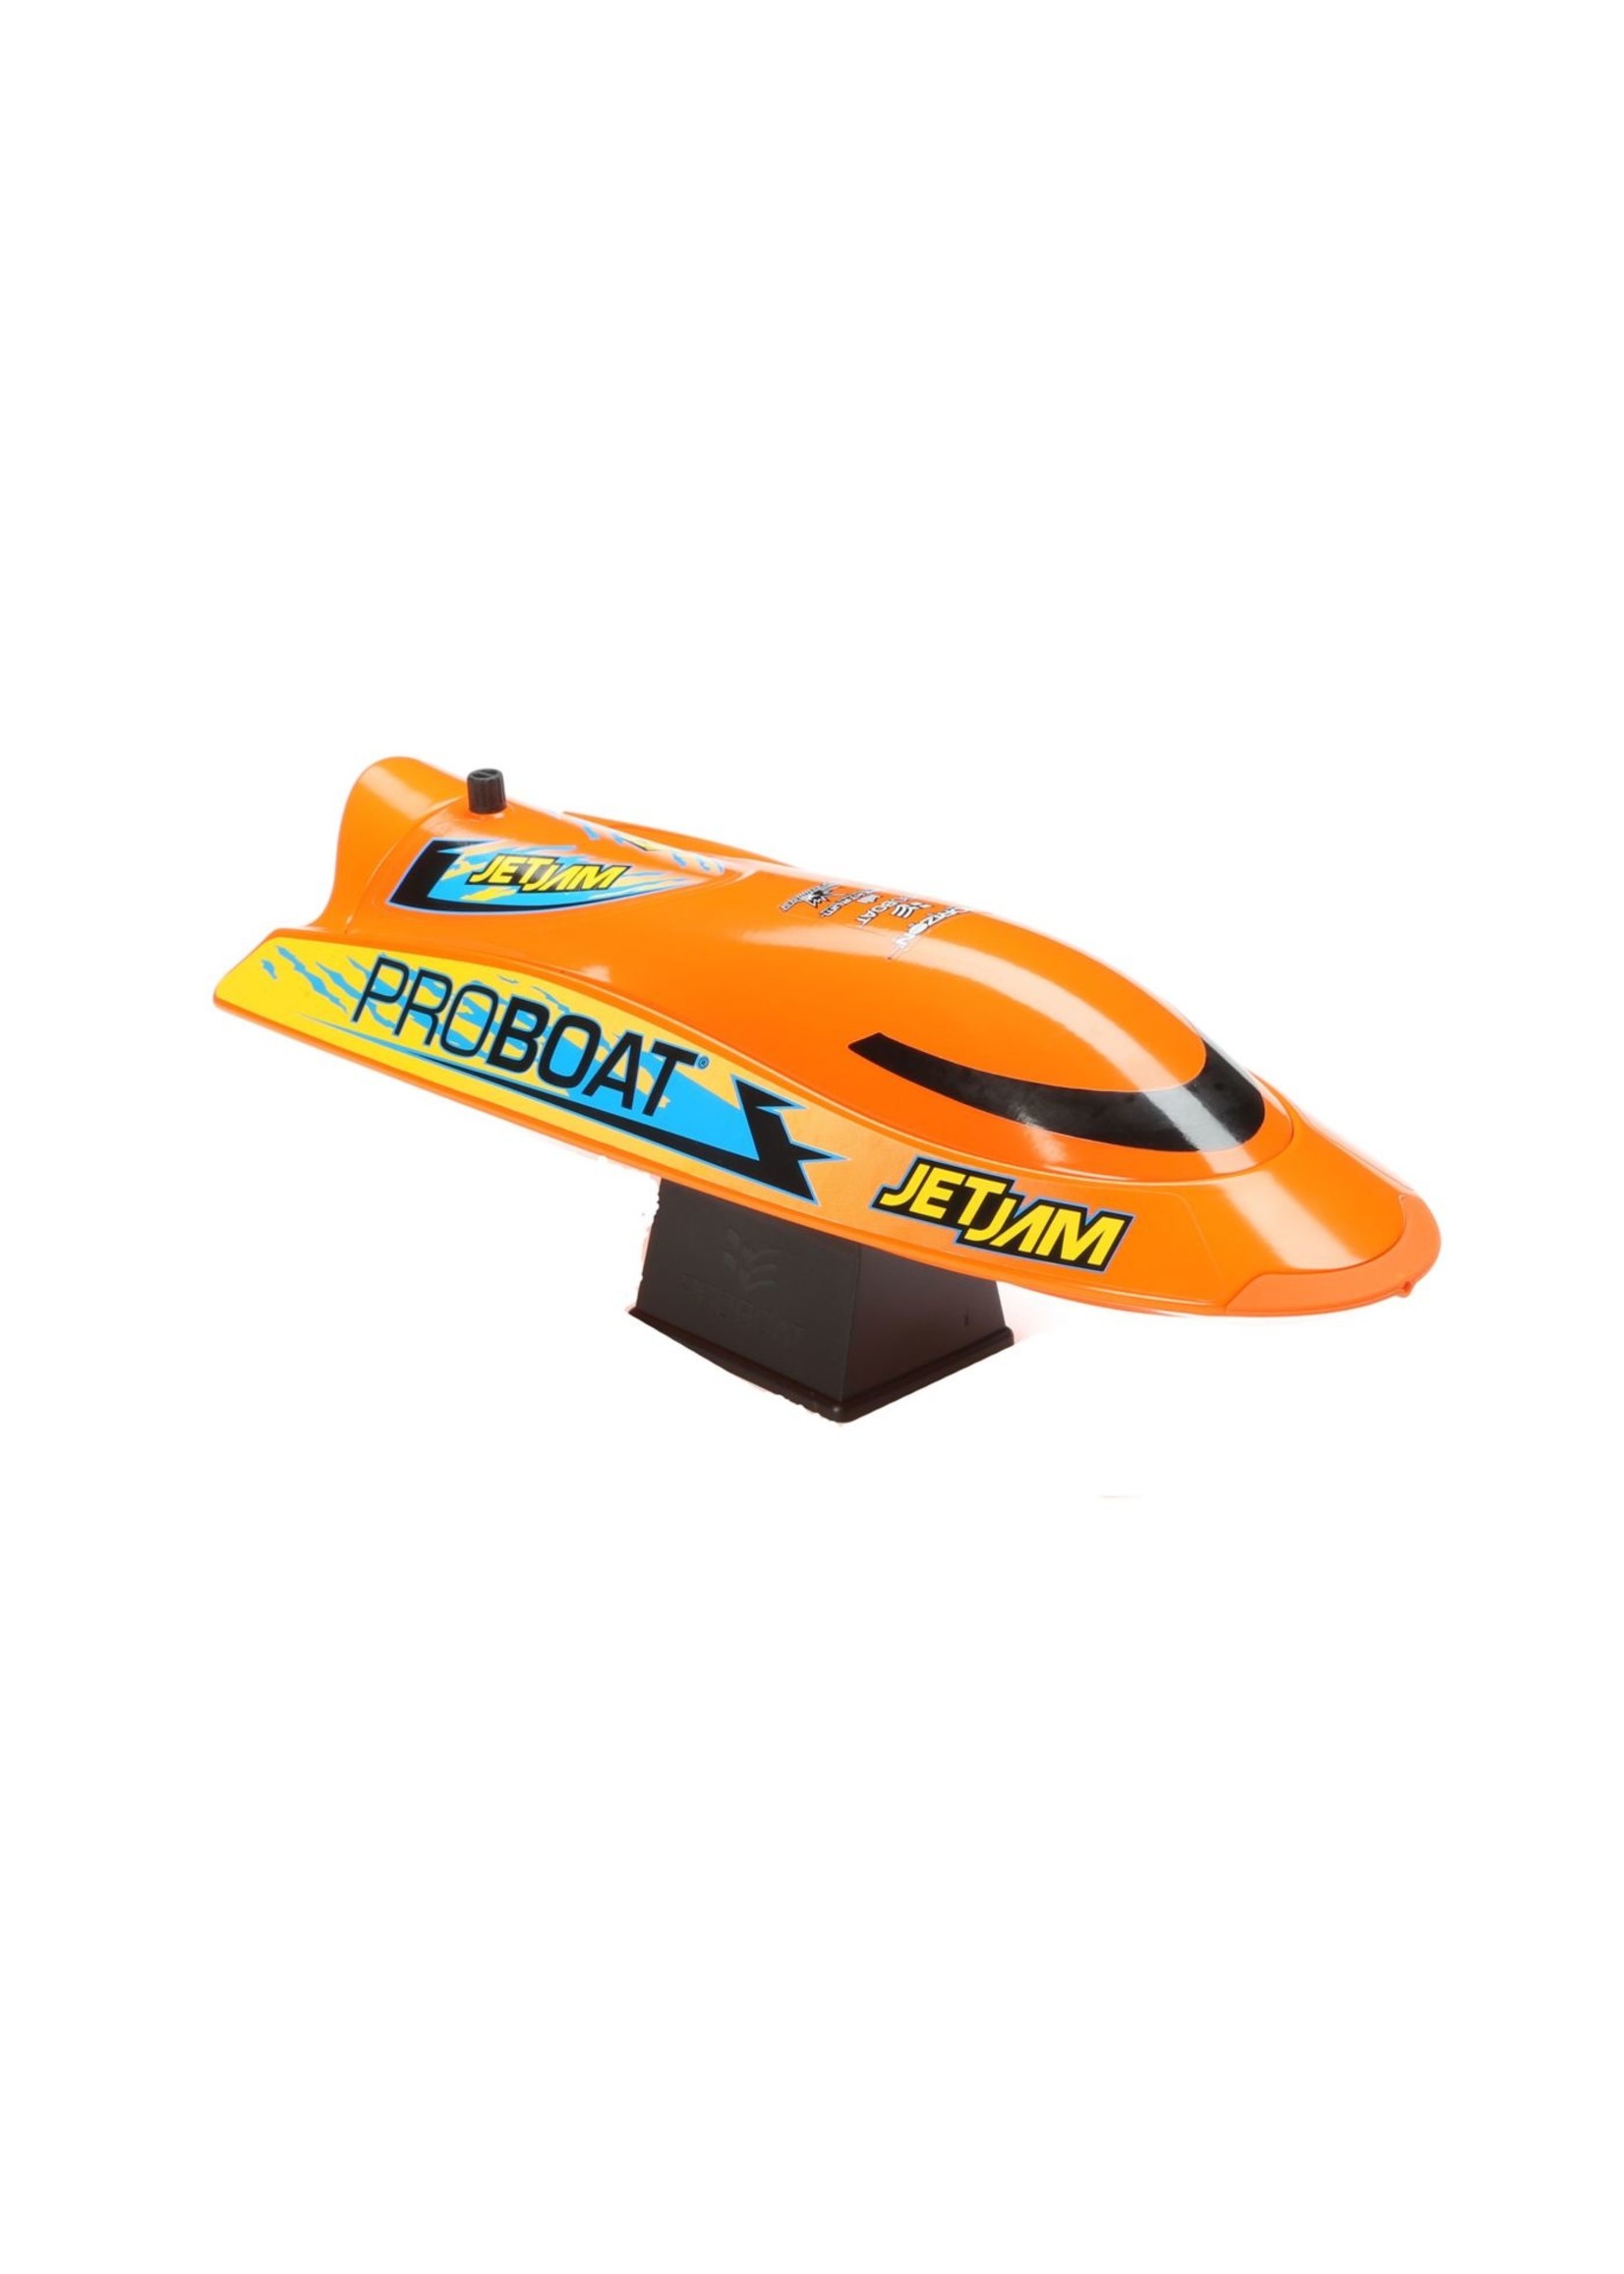 Pro Boat PRB 08031T1 - Jet Jam 12" Pool Racer Orange R